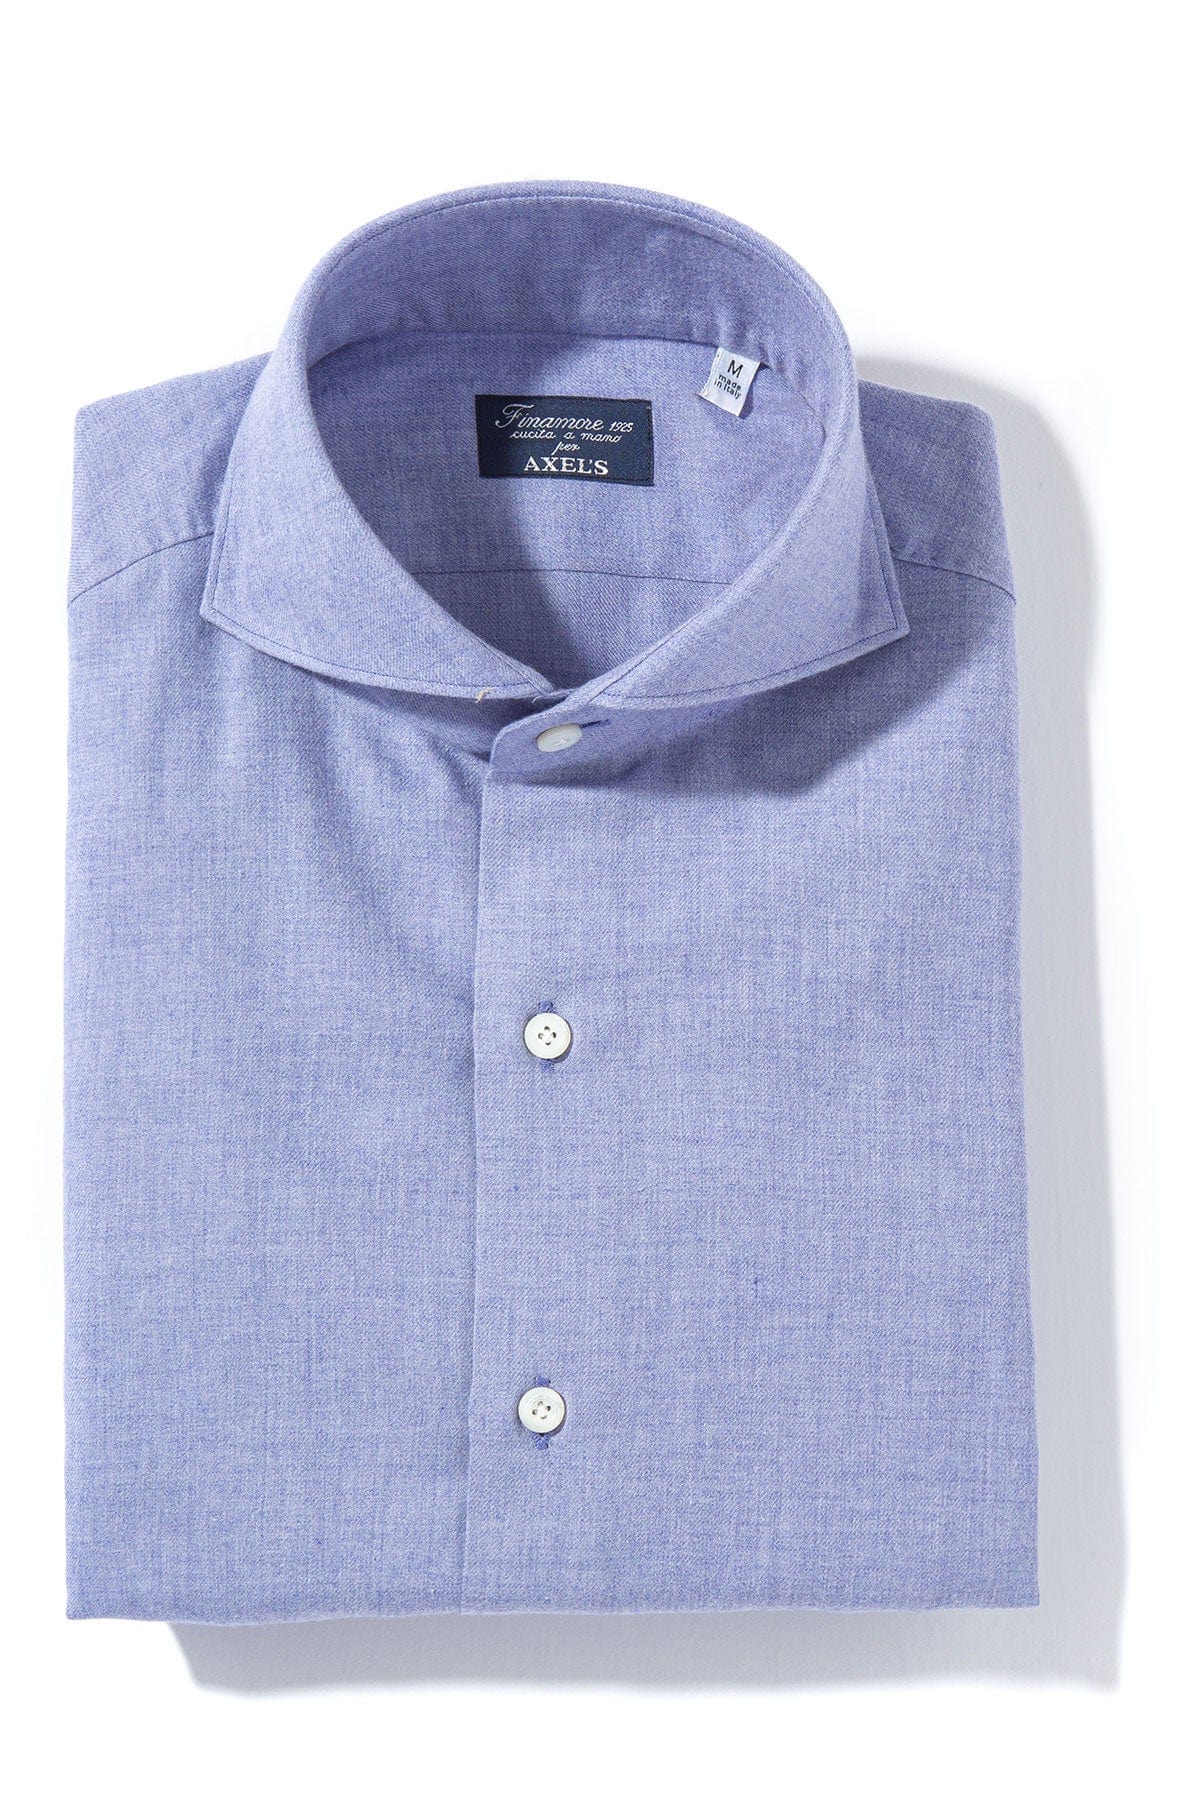 Hemme Cotton Cashmere Shirt in Dark Purple - AXEL'S